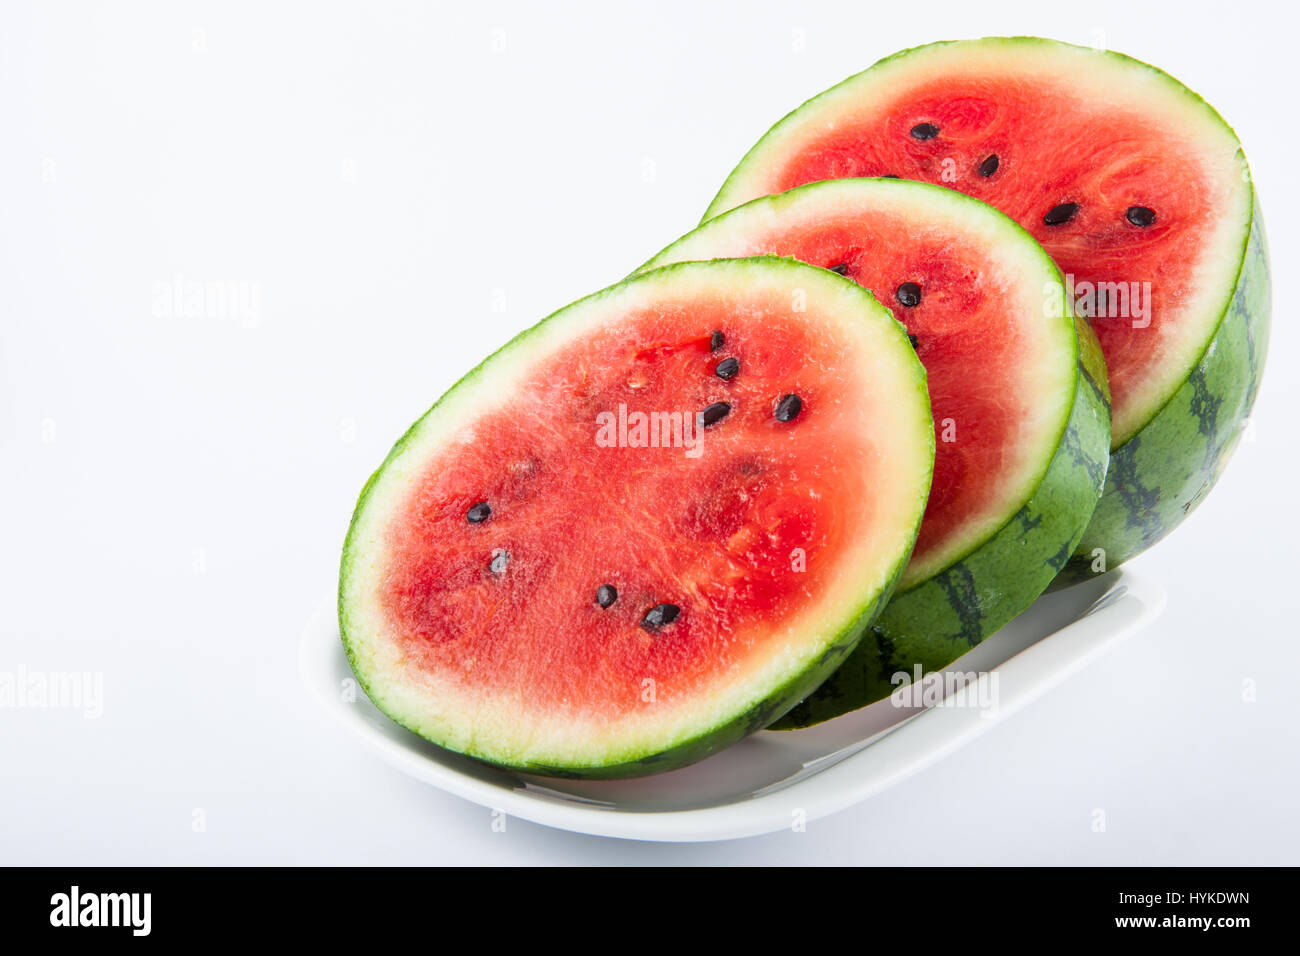 Watermelon (Citrullus lanatus) on white background Stock Photo